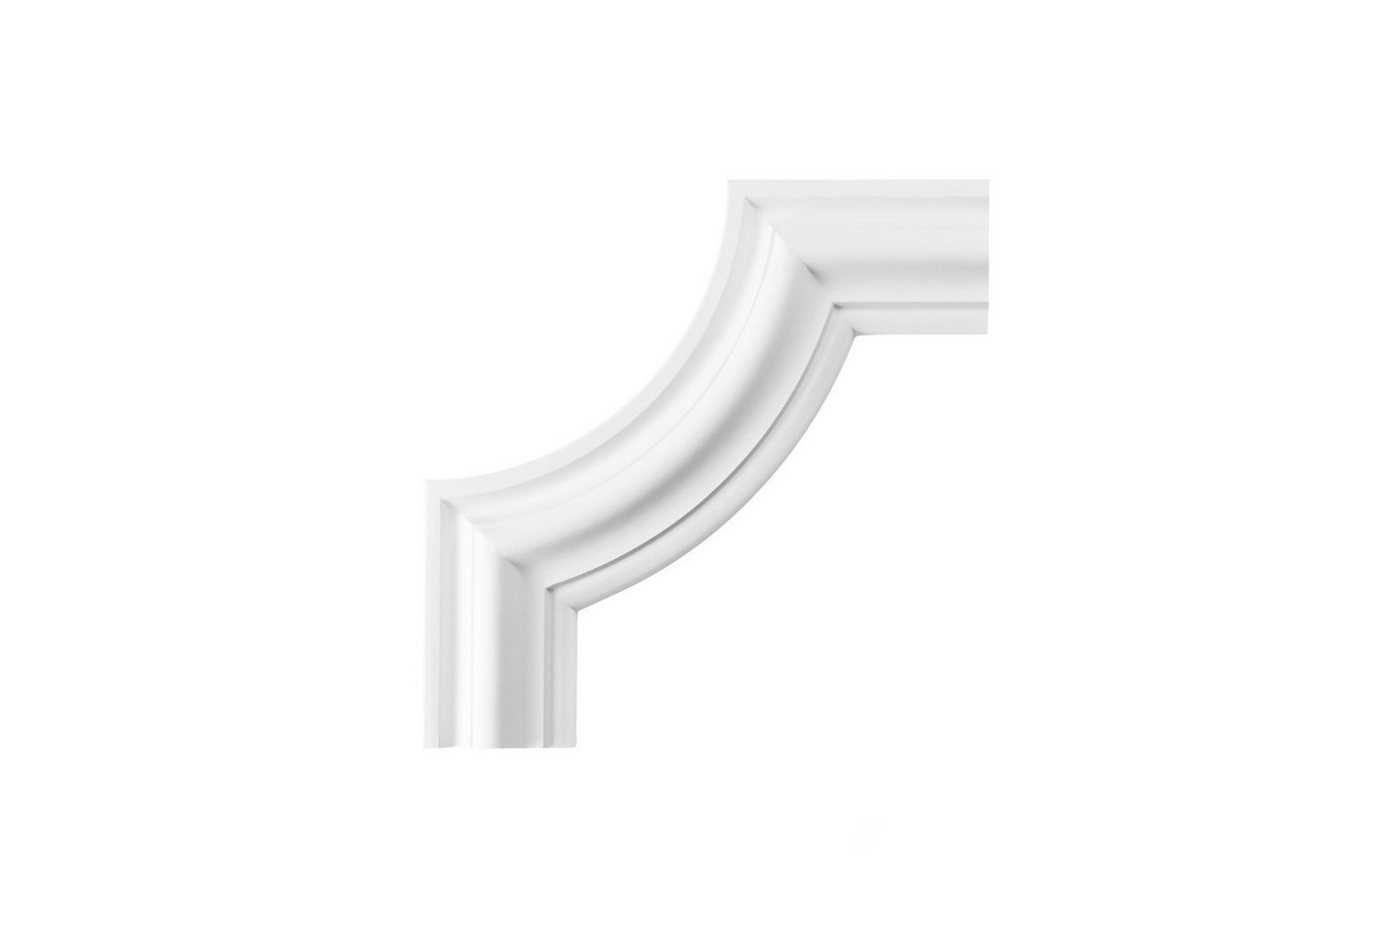 Hexim Perfect Stuckleiste AD308-12, Wand- und Deckenumrandung aus PU - Segment als Ergänzung zur Flachleiste, hart & stoßfest, weiß - Spiegelrahmen von Hexim Perfect